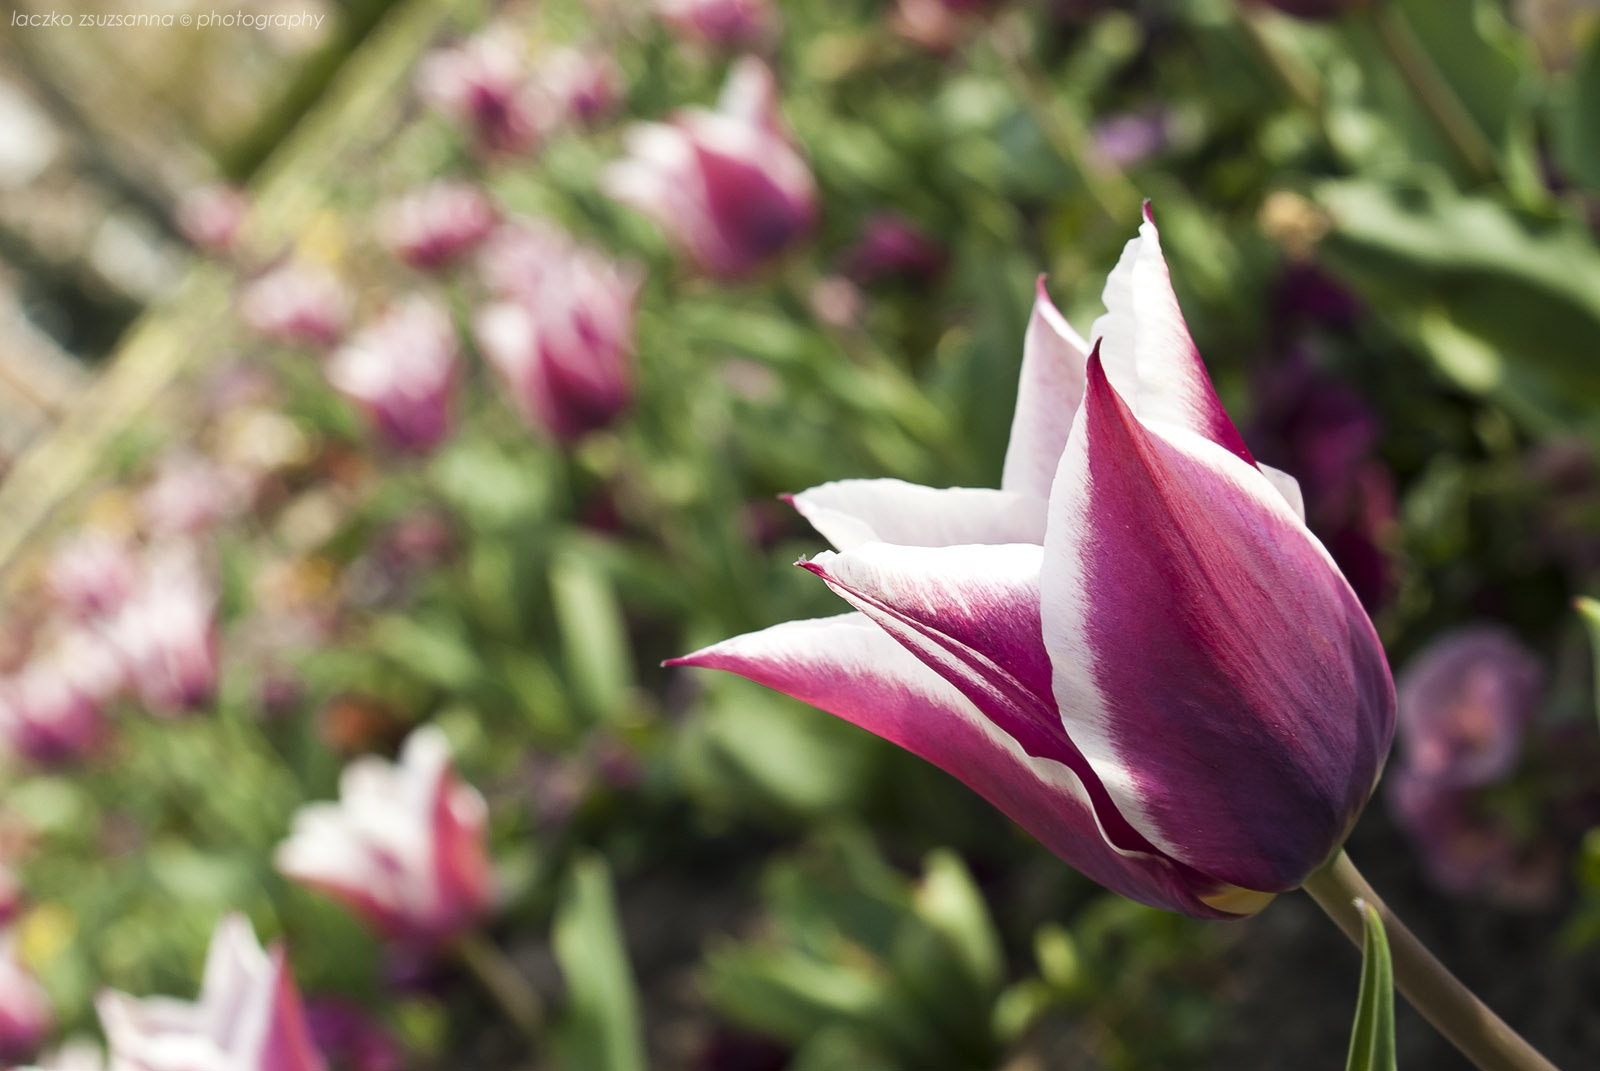 tulipánmező a közt.elnöki palota előtt